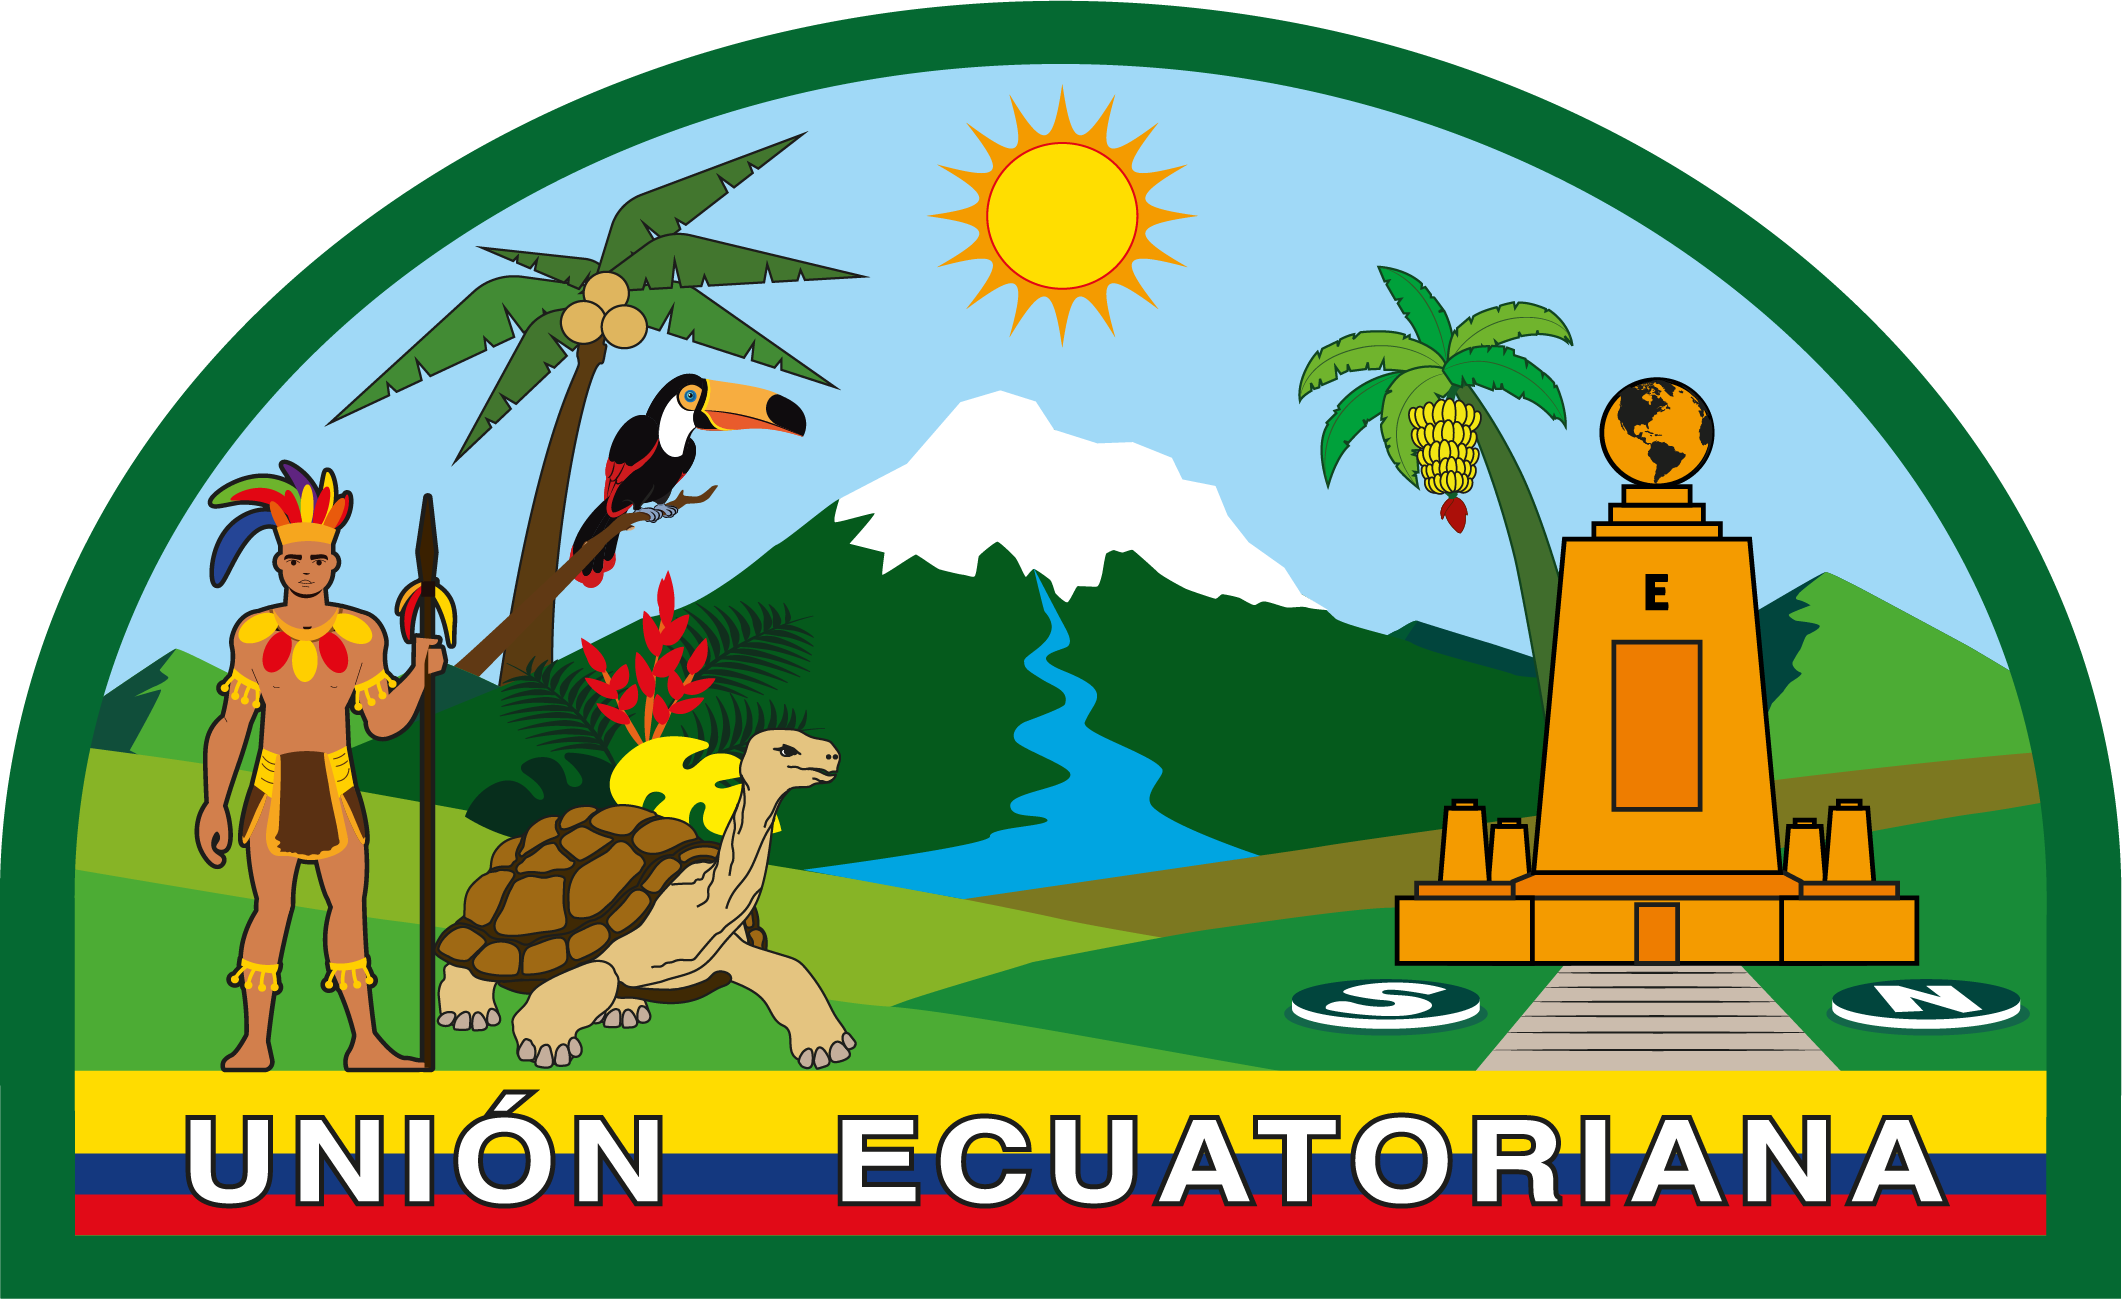 Actualización del emblema de la Unión Ecuatoriana